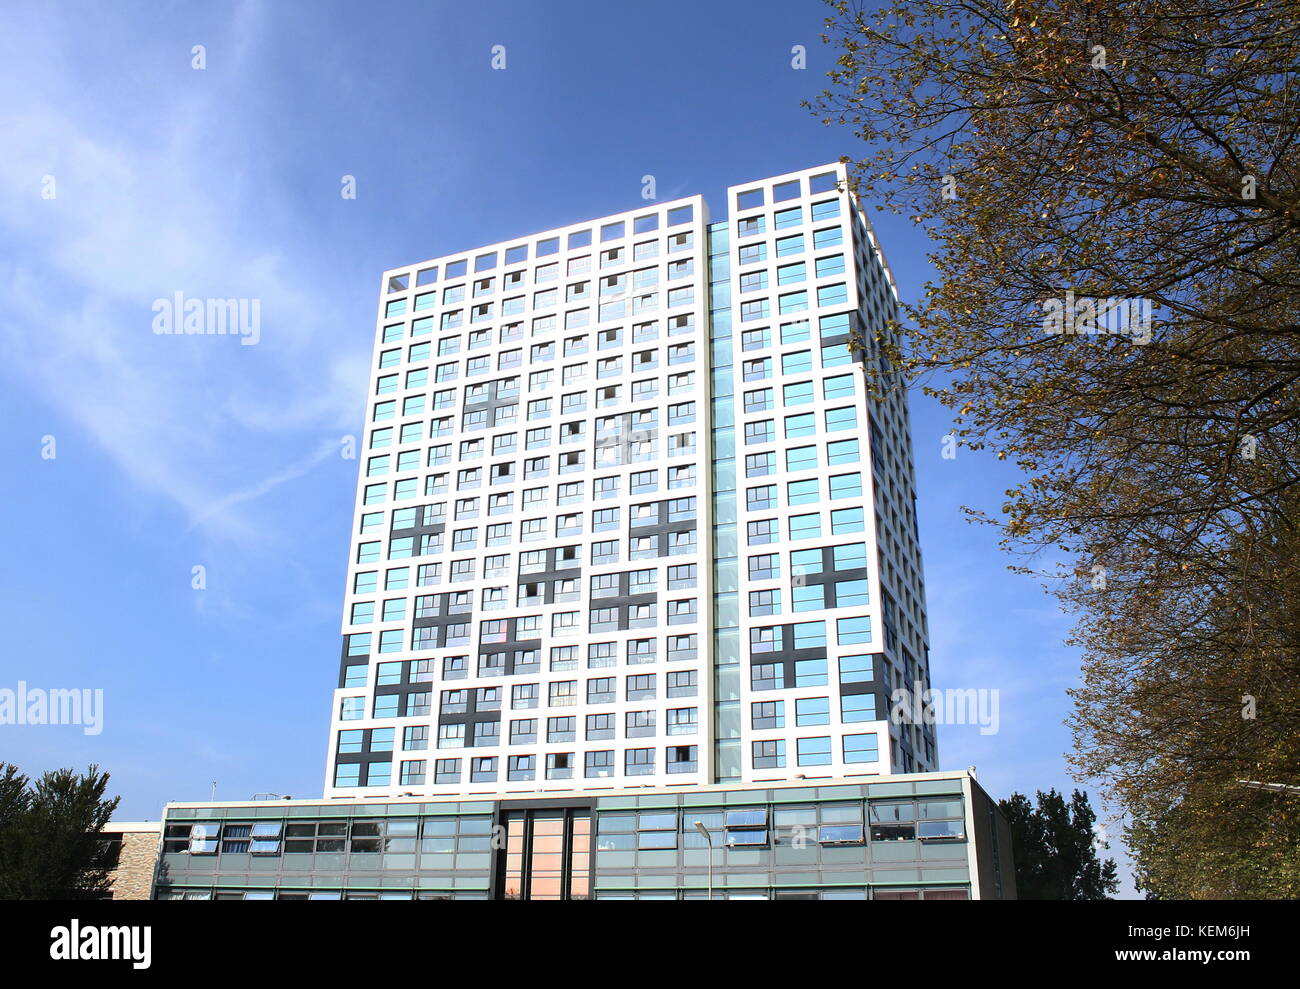 Nuovo di fabbrica highrise studente complesso di appartamenti che domina a Delft University of Technology campus a Stieltjesweg. Delft, Paesi Bassi Foto Stock